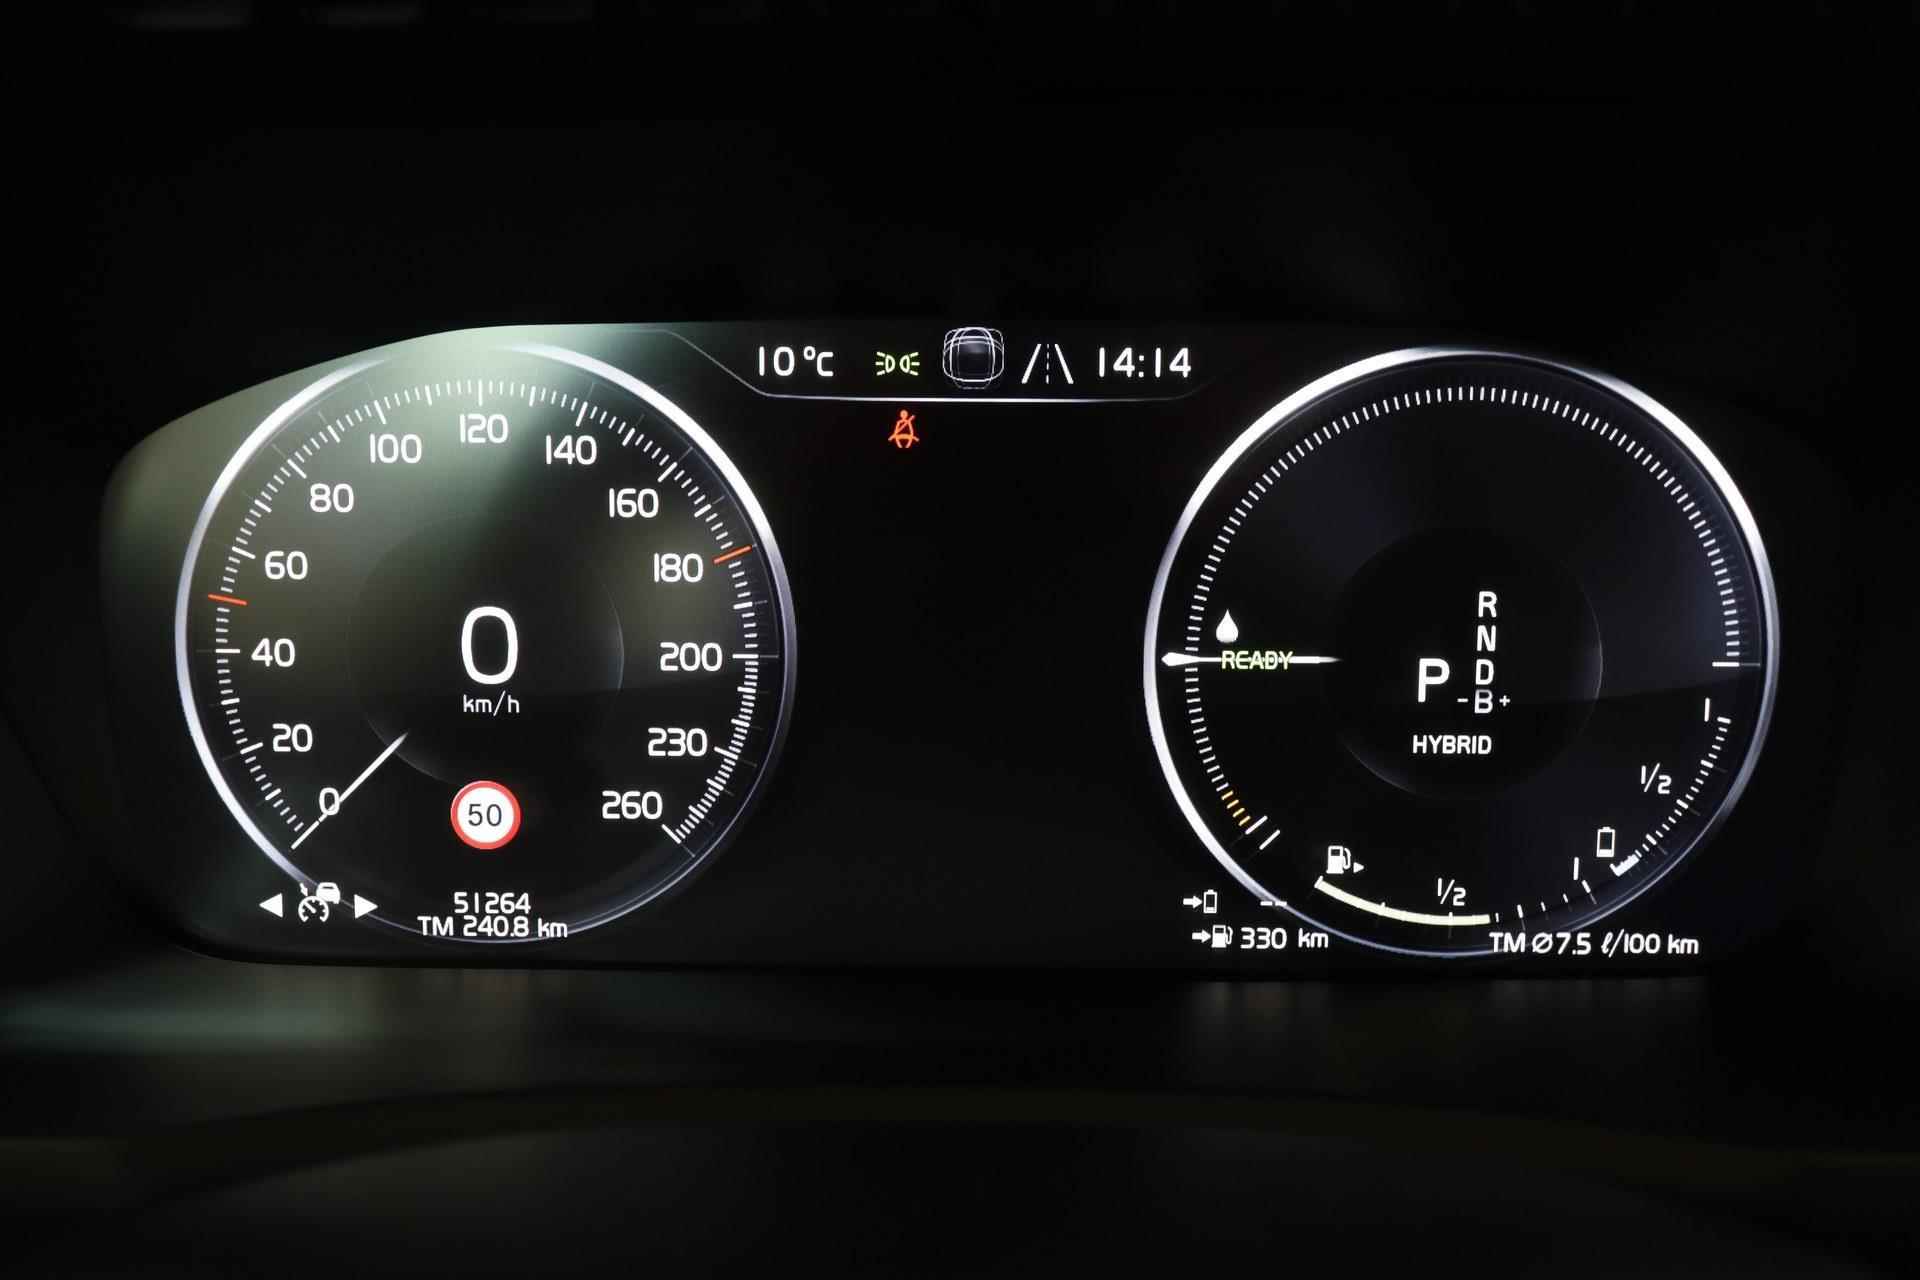 Volvo XC90 T8 Recharge AWD R-Design - IntelliSafe Assist & Surround - Harman/Kardon audio - Adaptieve LED koplampen - Parkeercamera achter - Elektr. bedienb. voorstoelen met geheugen - Climate-Control 4-zone - Apple Carplay & Android Auto - Parkeersensoren voor & achter - Verwarmde voorstoelen & stuur - Draadloze tel. lader - Extra getint glas - 20' LMV - 10/29